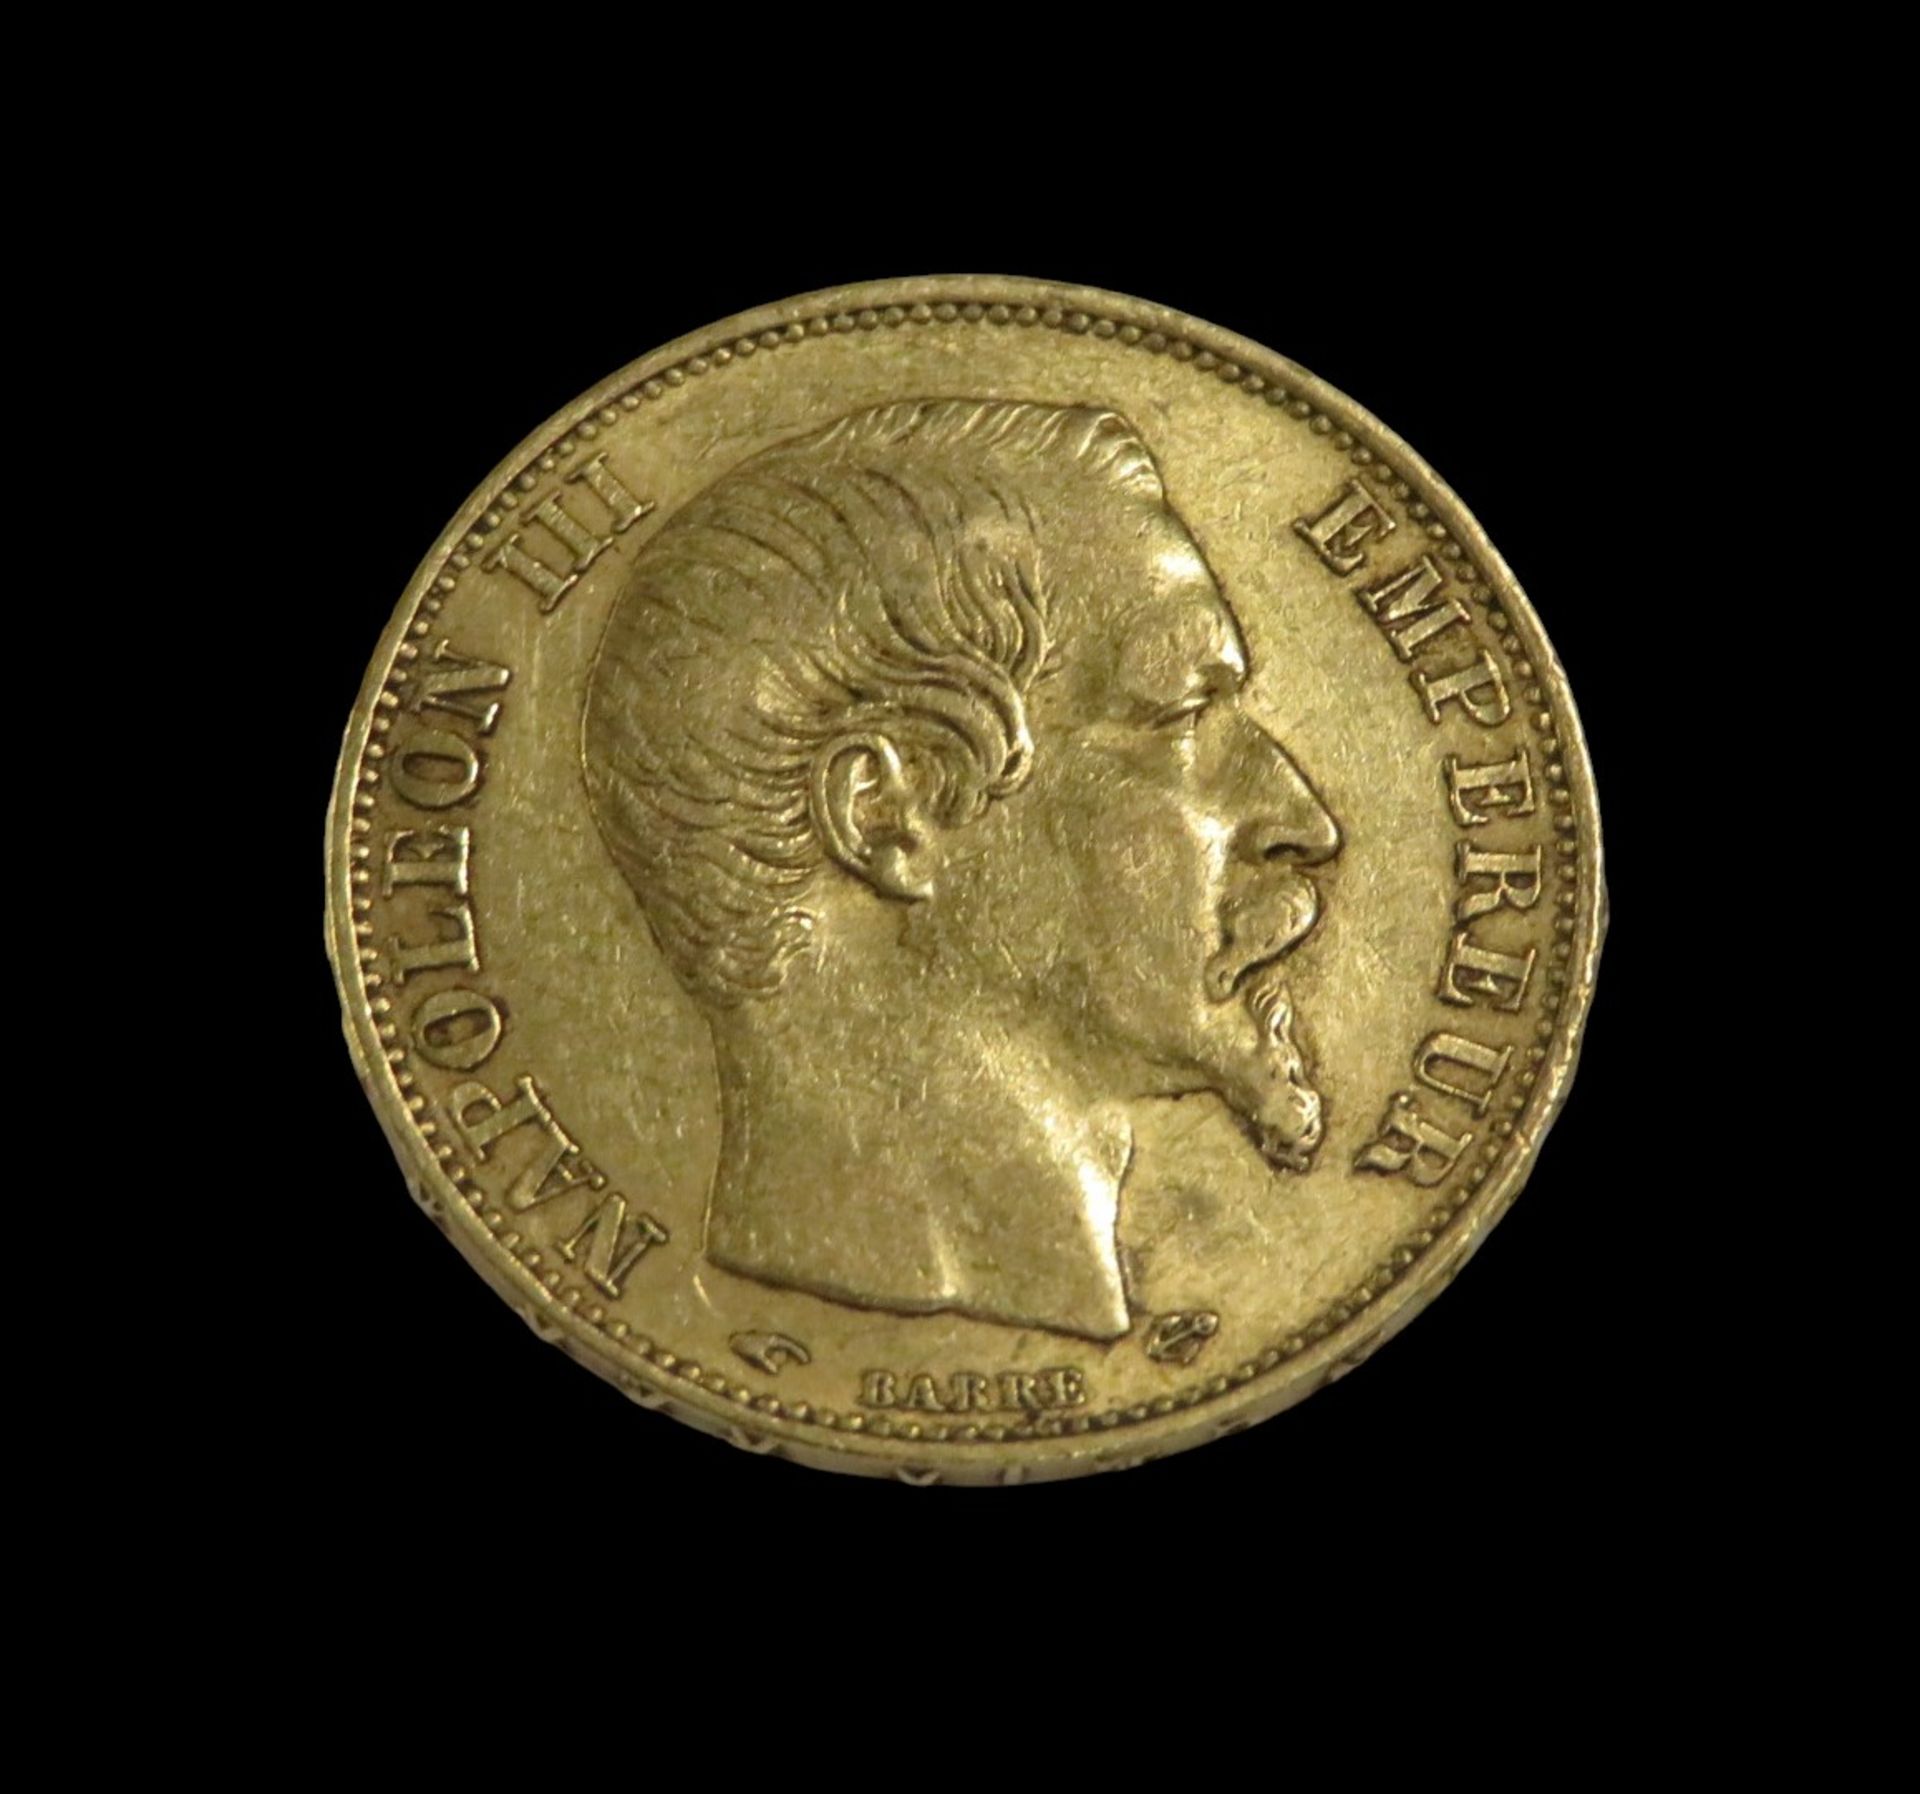 Goldmünze, 20 Francs, Napoleon III, 1856, Gold 900/000, 6,4 g, d 2,1 cm.